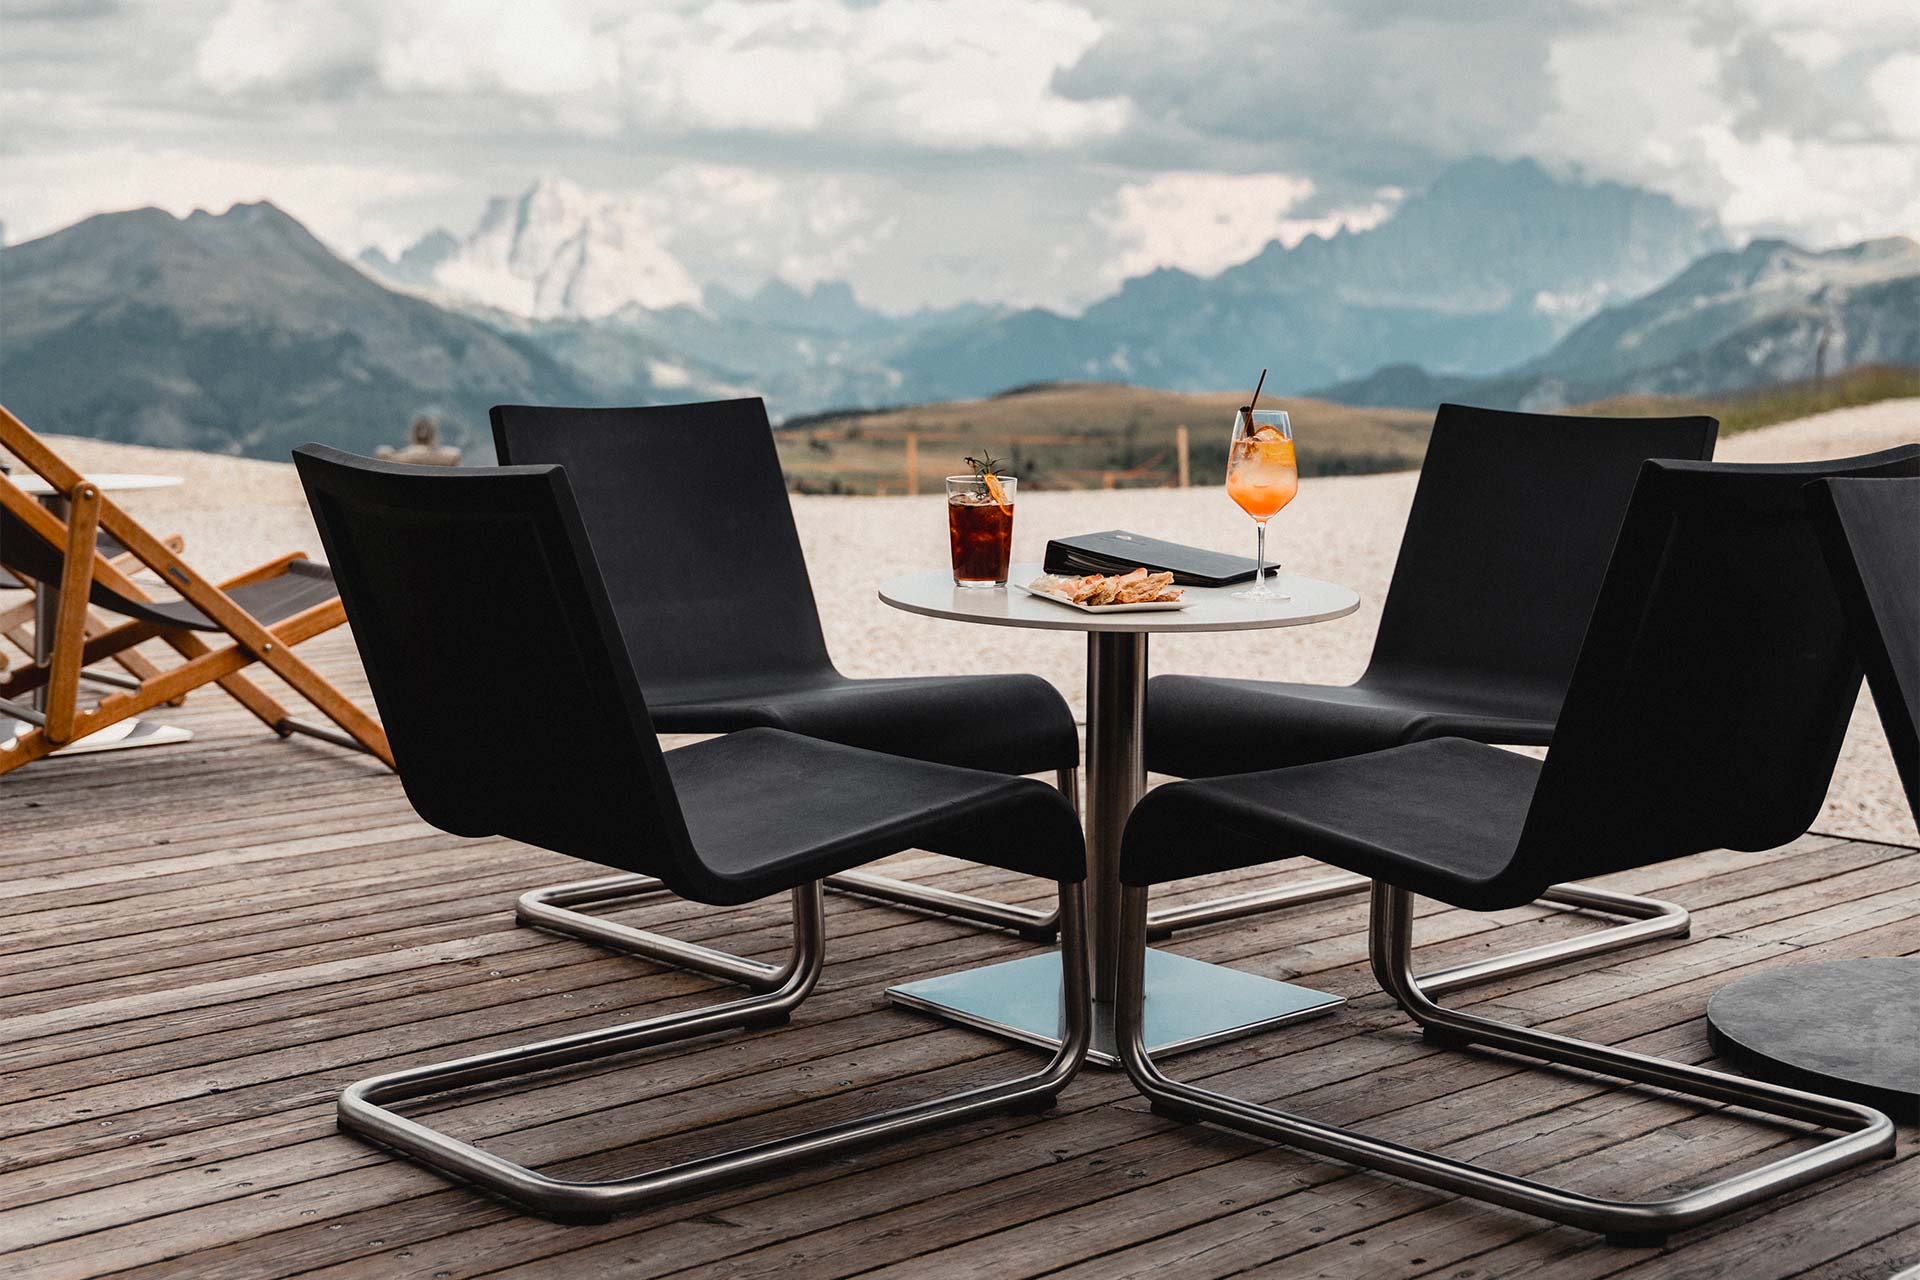 Die Alpine Lounge ist mit Stühlen, Tischen und Sofas ausgestattet, von denen aus die Gäste einen Panoramablick auf das Corvare genießen können. Ein Ofen in der Mitte wärmt den Raum.